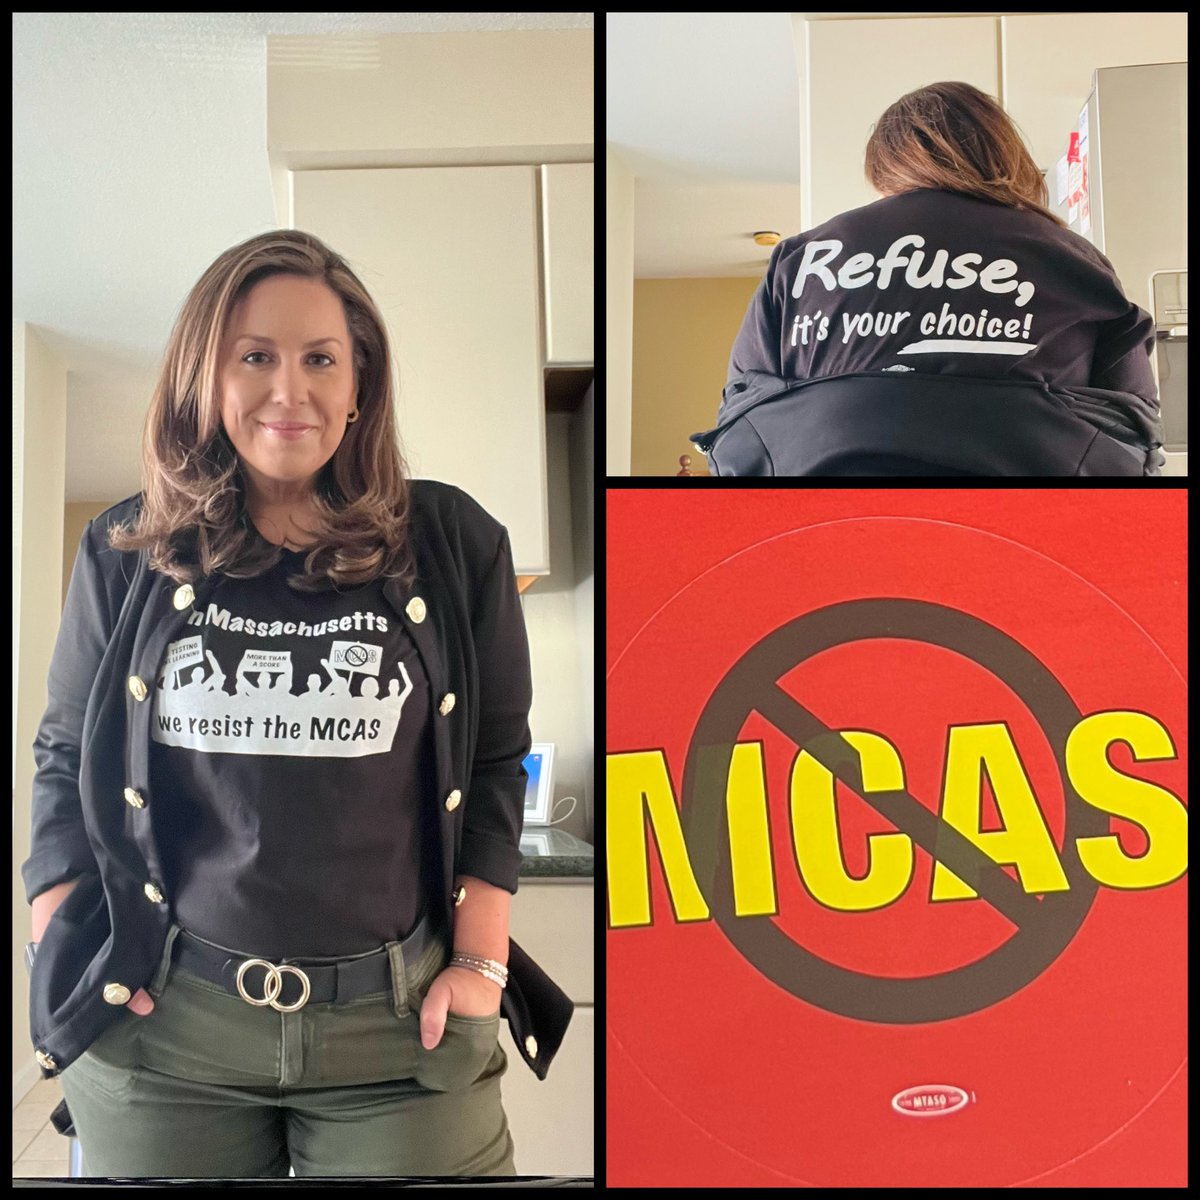 In Massachusetts we resist the MCAS.

Refuse, it’s your choice!

Go to massteacher.org/highstakes to learn more.

@massteacher @Mass_CPS 
#morethanascore #lesstestingmorelearning